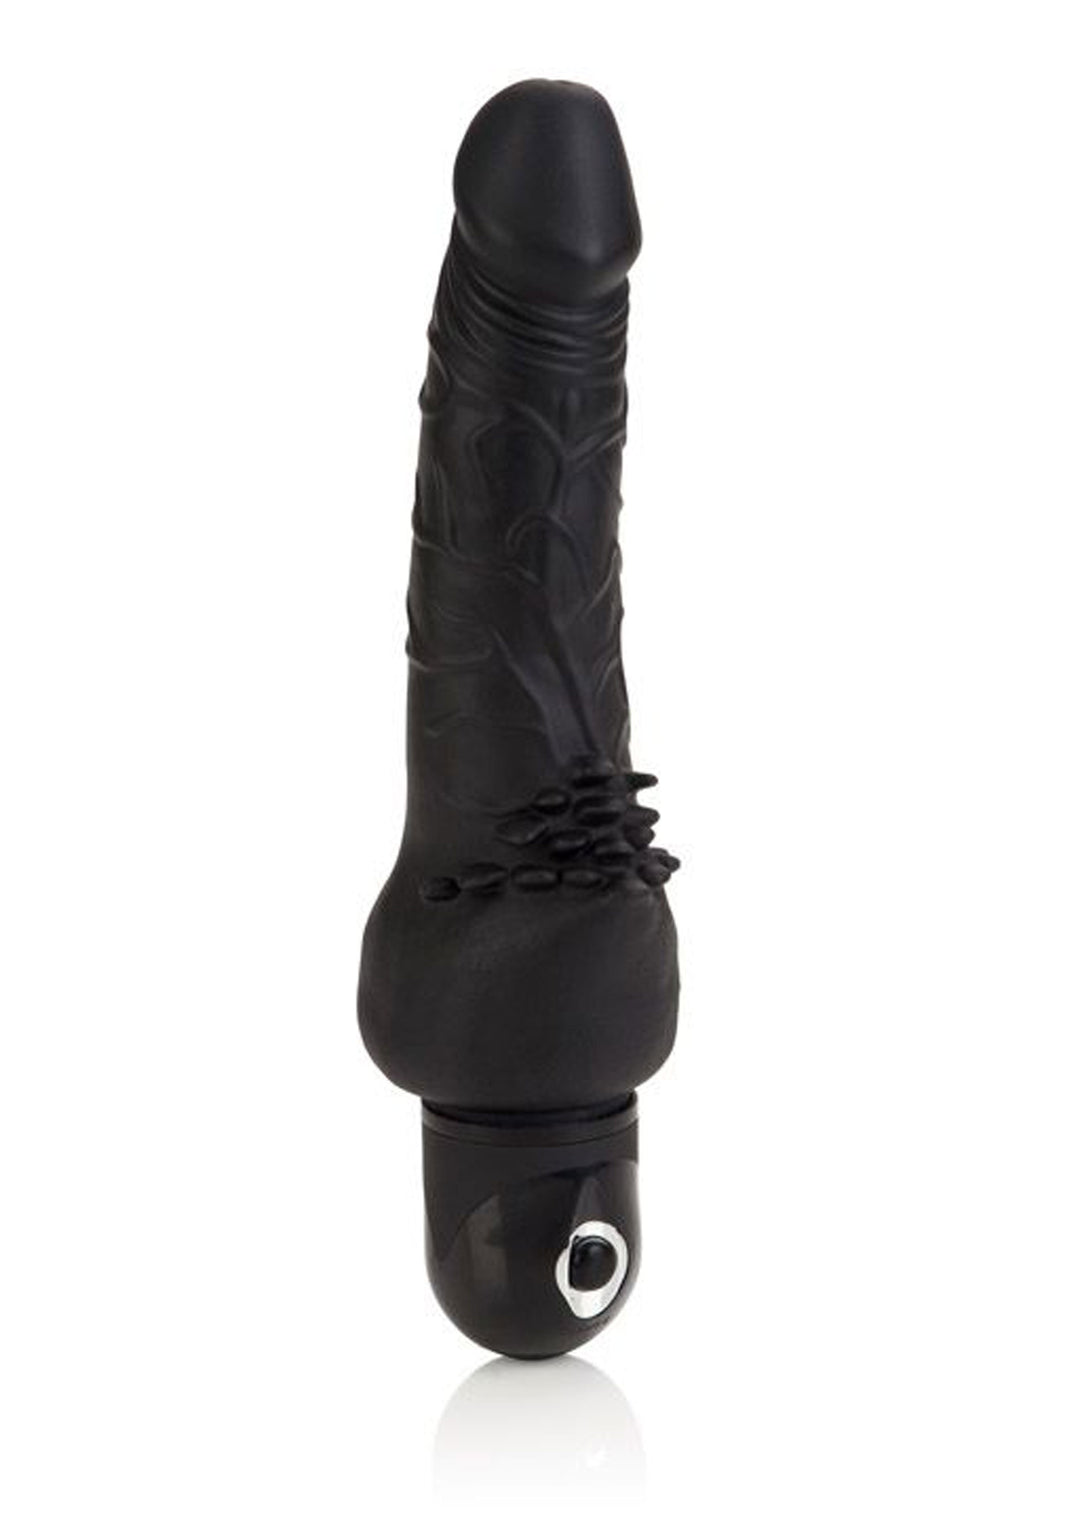 Realistic vibrator with clitoral stimulator Cliterrific Fuchsia - 19 cm